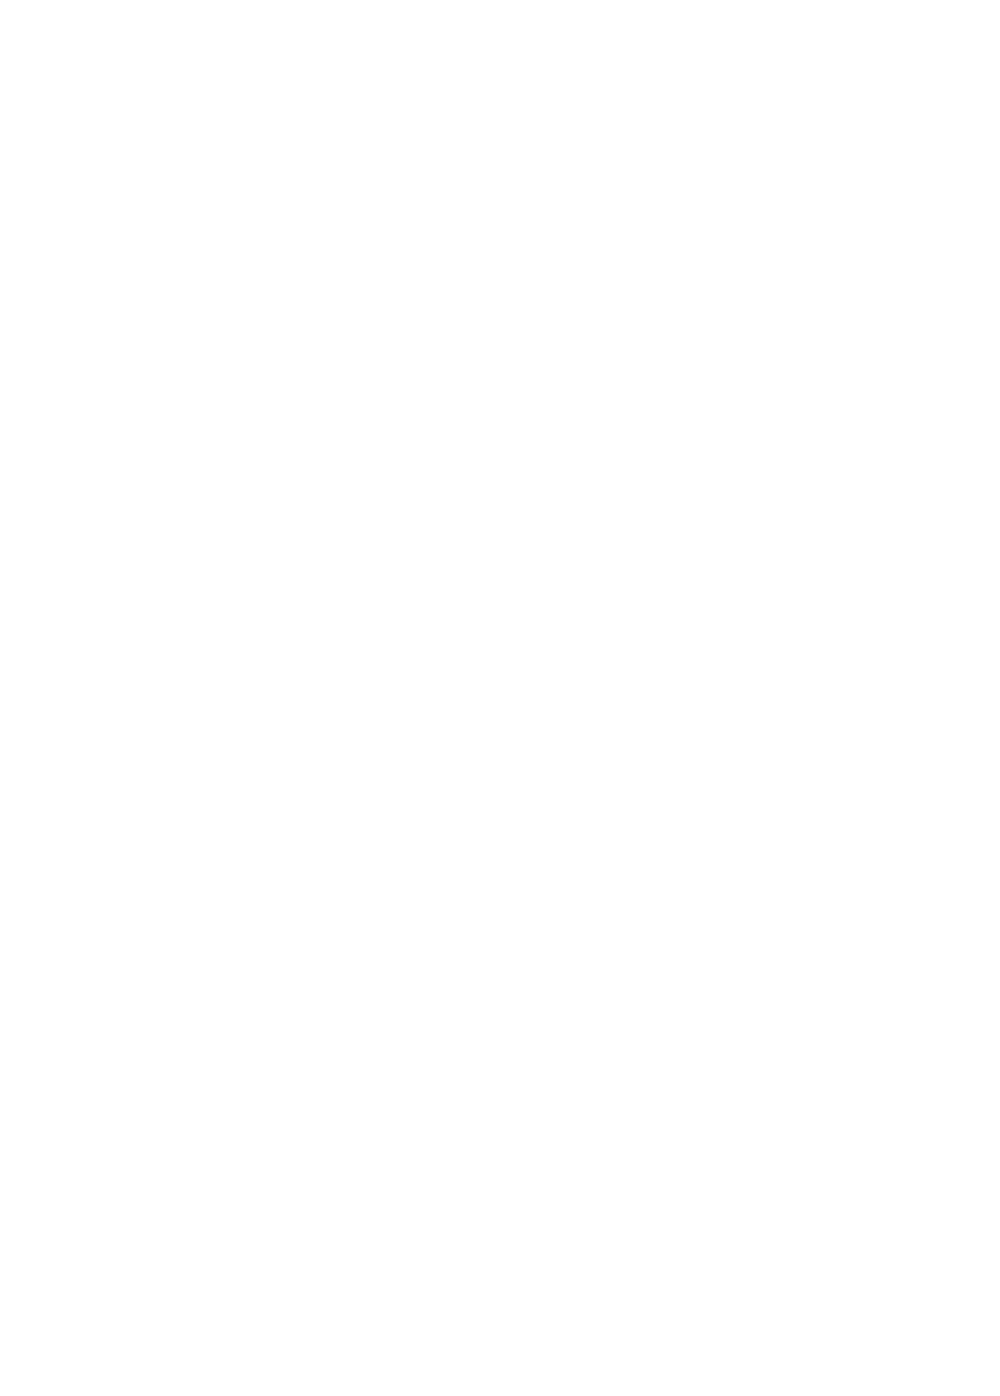 leaf-logo.png